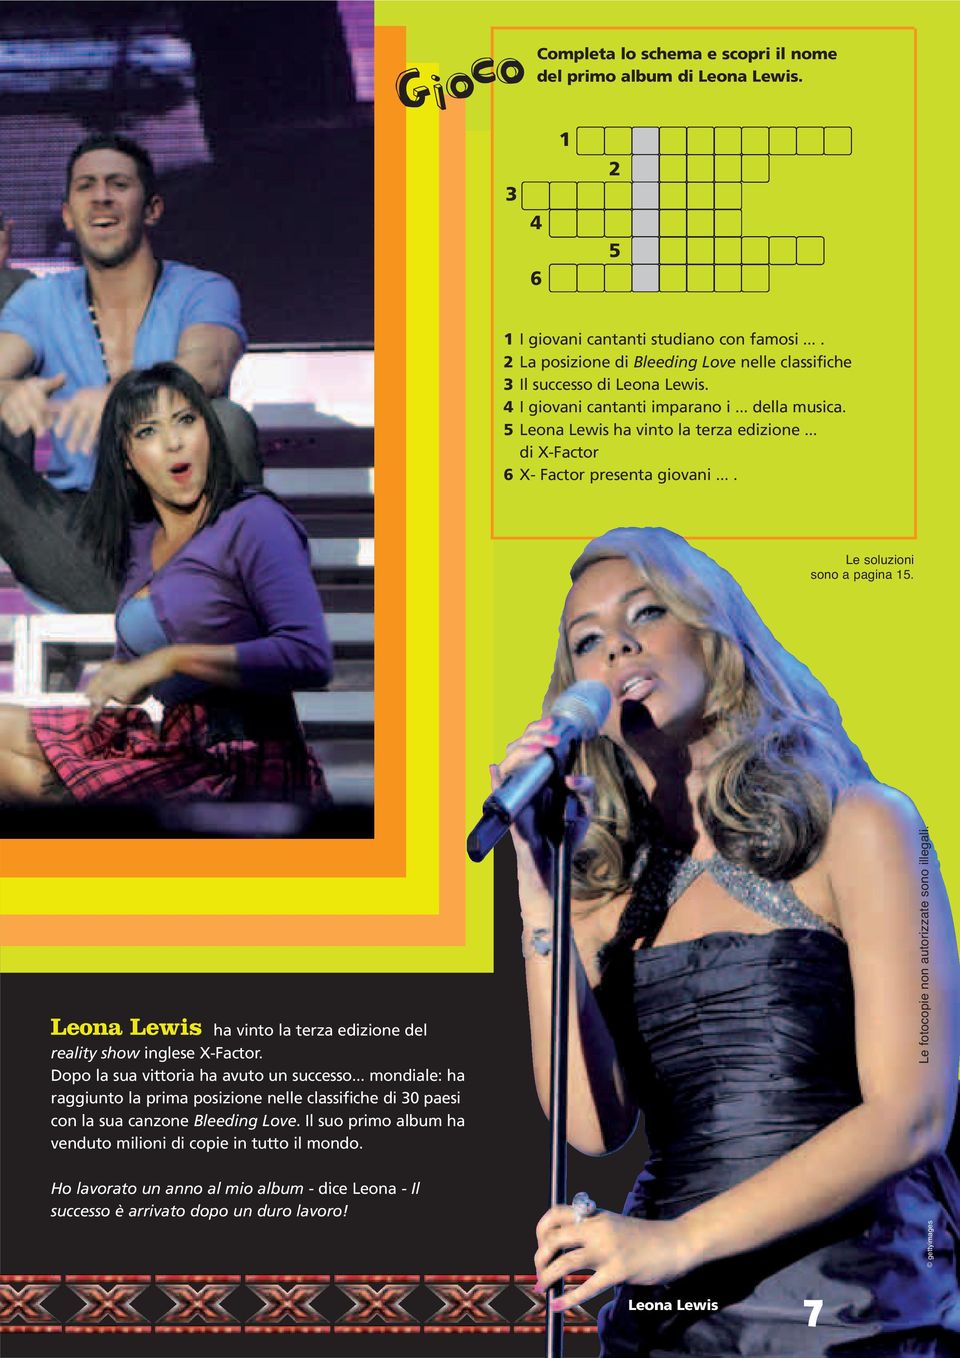 .. di X-Factor 6 X- Factor presenta giovani.... Le soluzioni sono a pagina 15. Leona Lewis ha vinto la terza edizione del reality show inglese X-Factor. Dopo la sua vittoria ha avuto un successo.